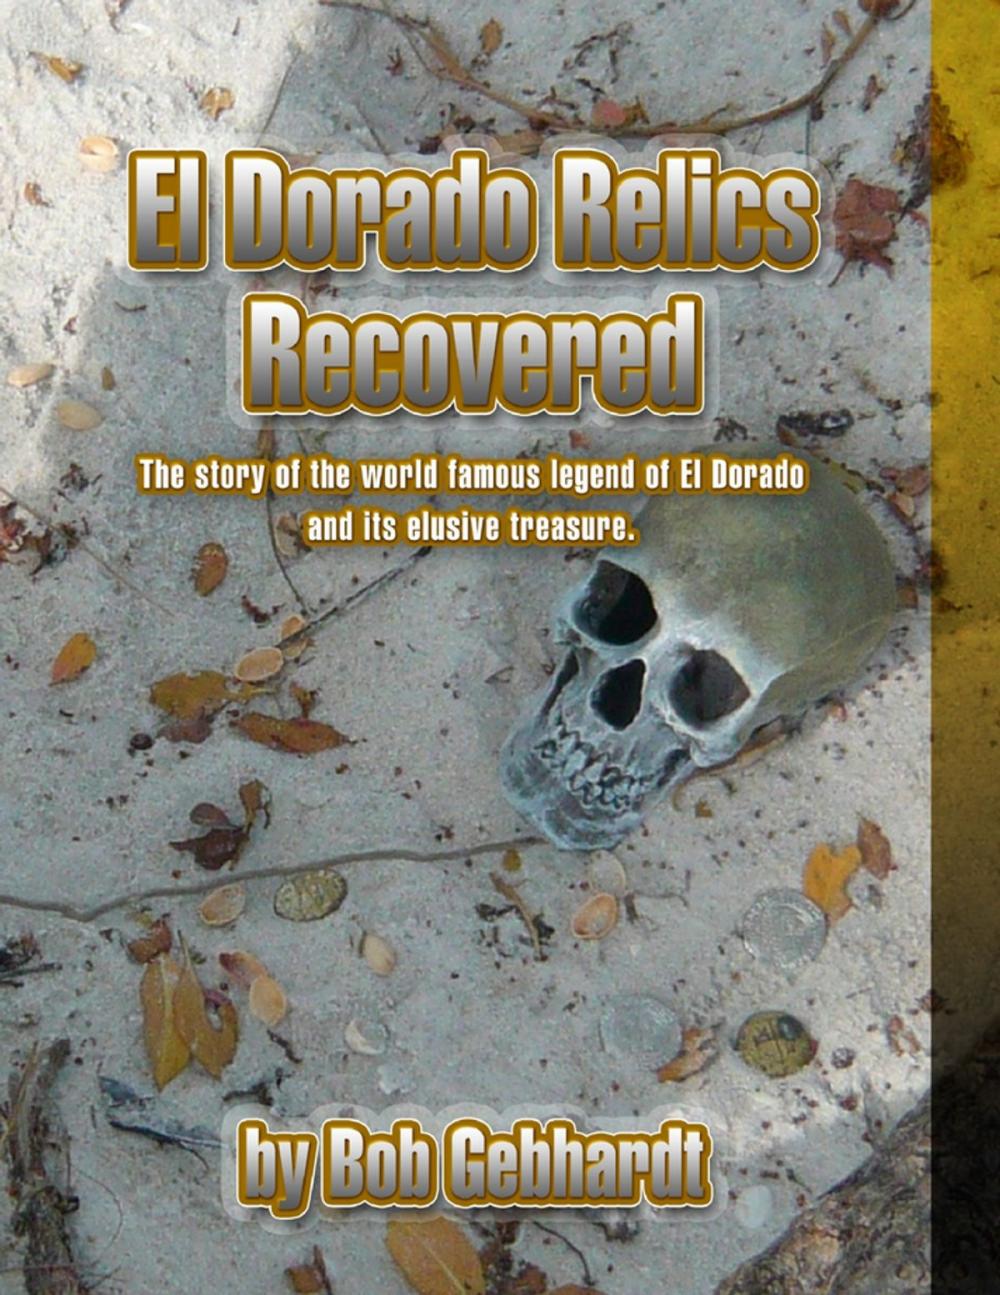 Big bigCover of El Dorado Relics Recovered